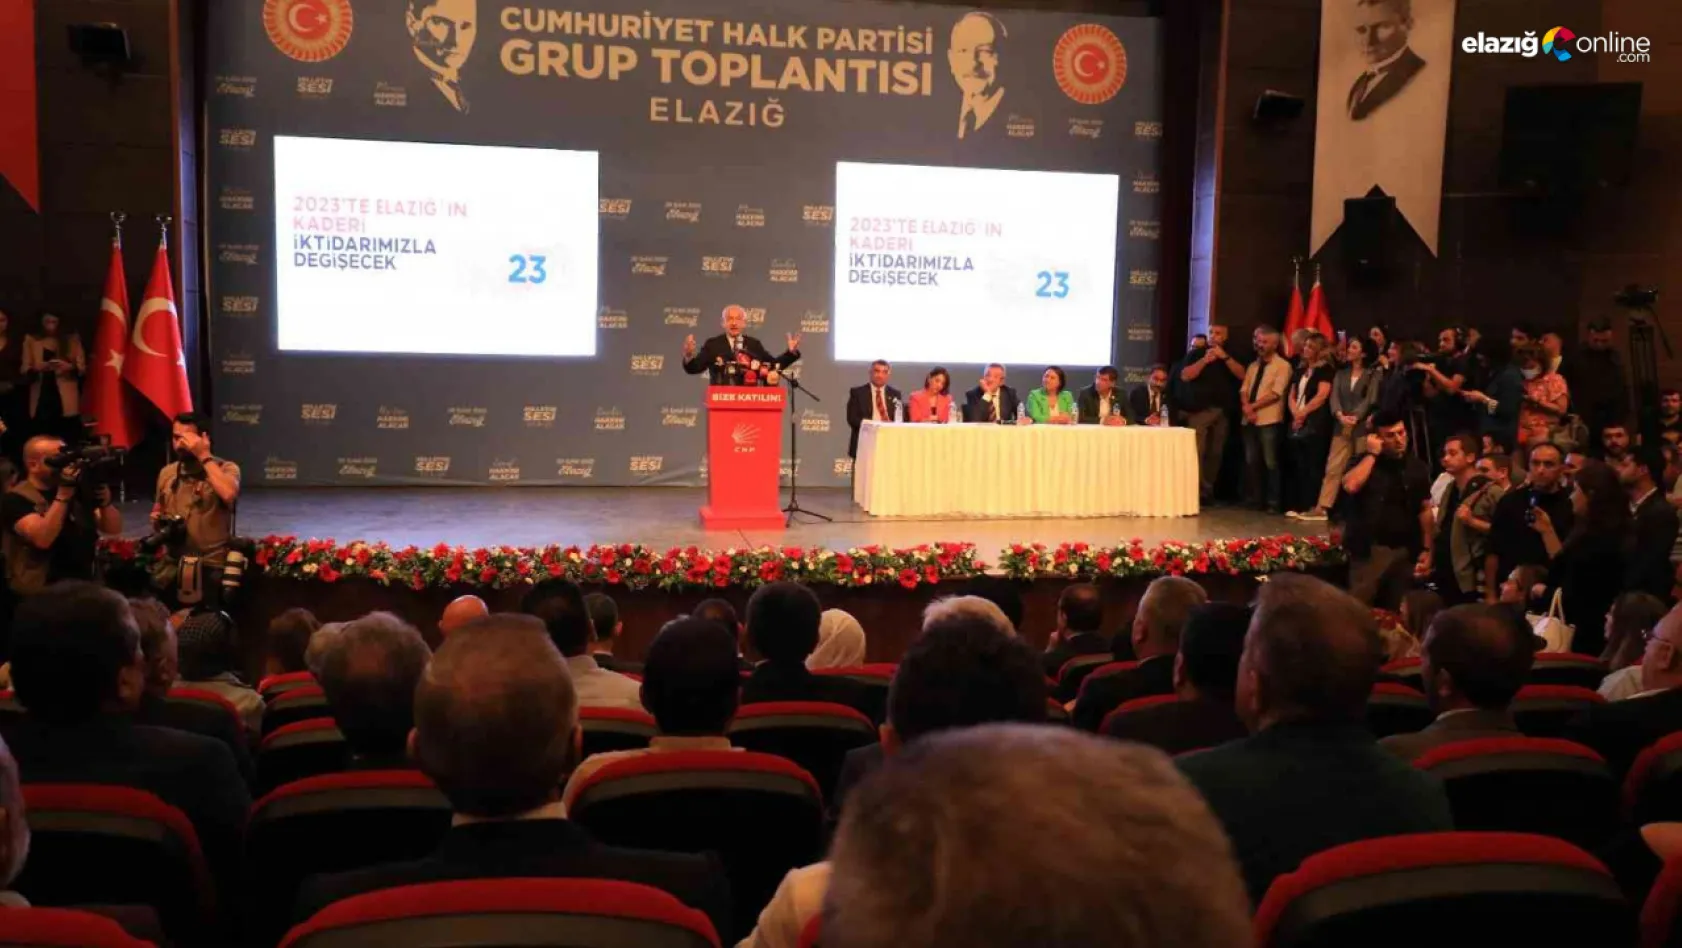 Genel Başkan Kemal Kılıçdaroğlu, partisinin Elazığ'daki grup toplantısına katıldı